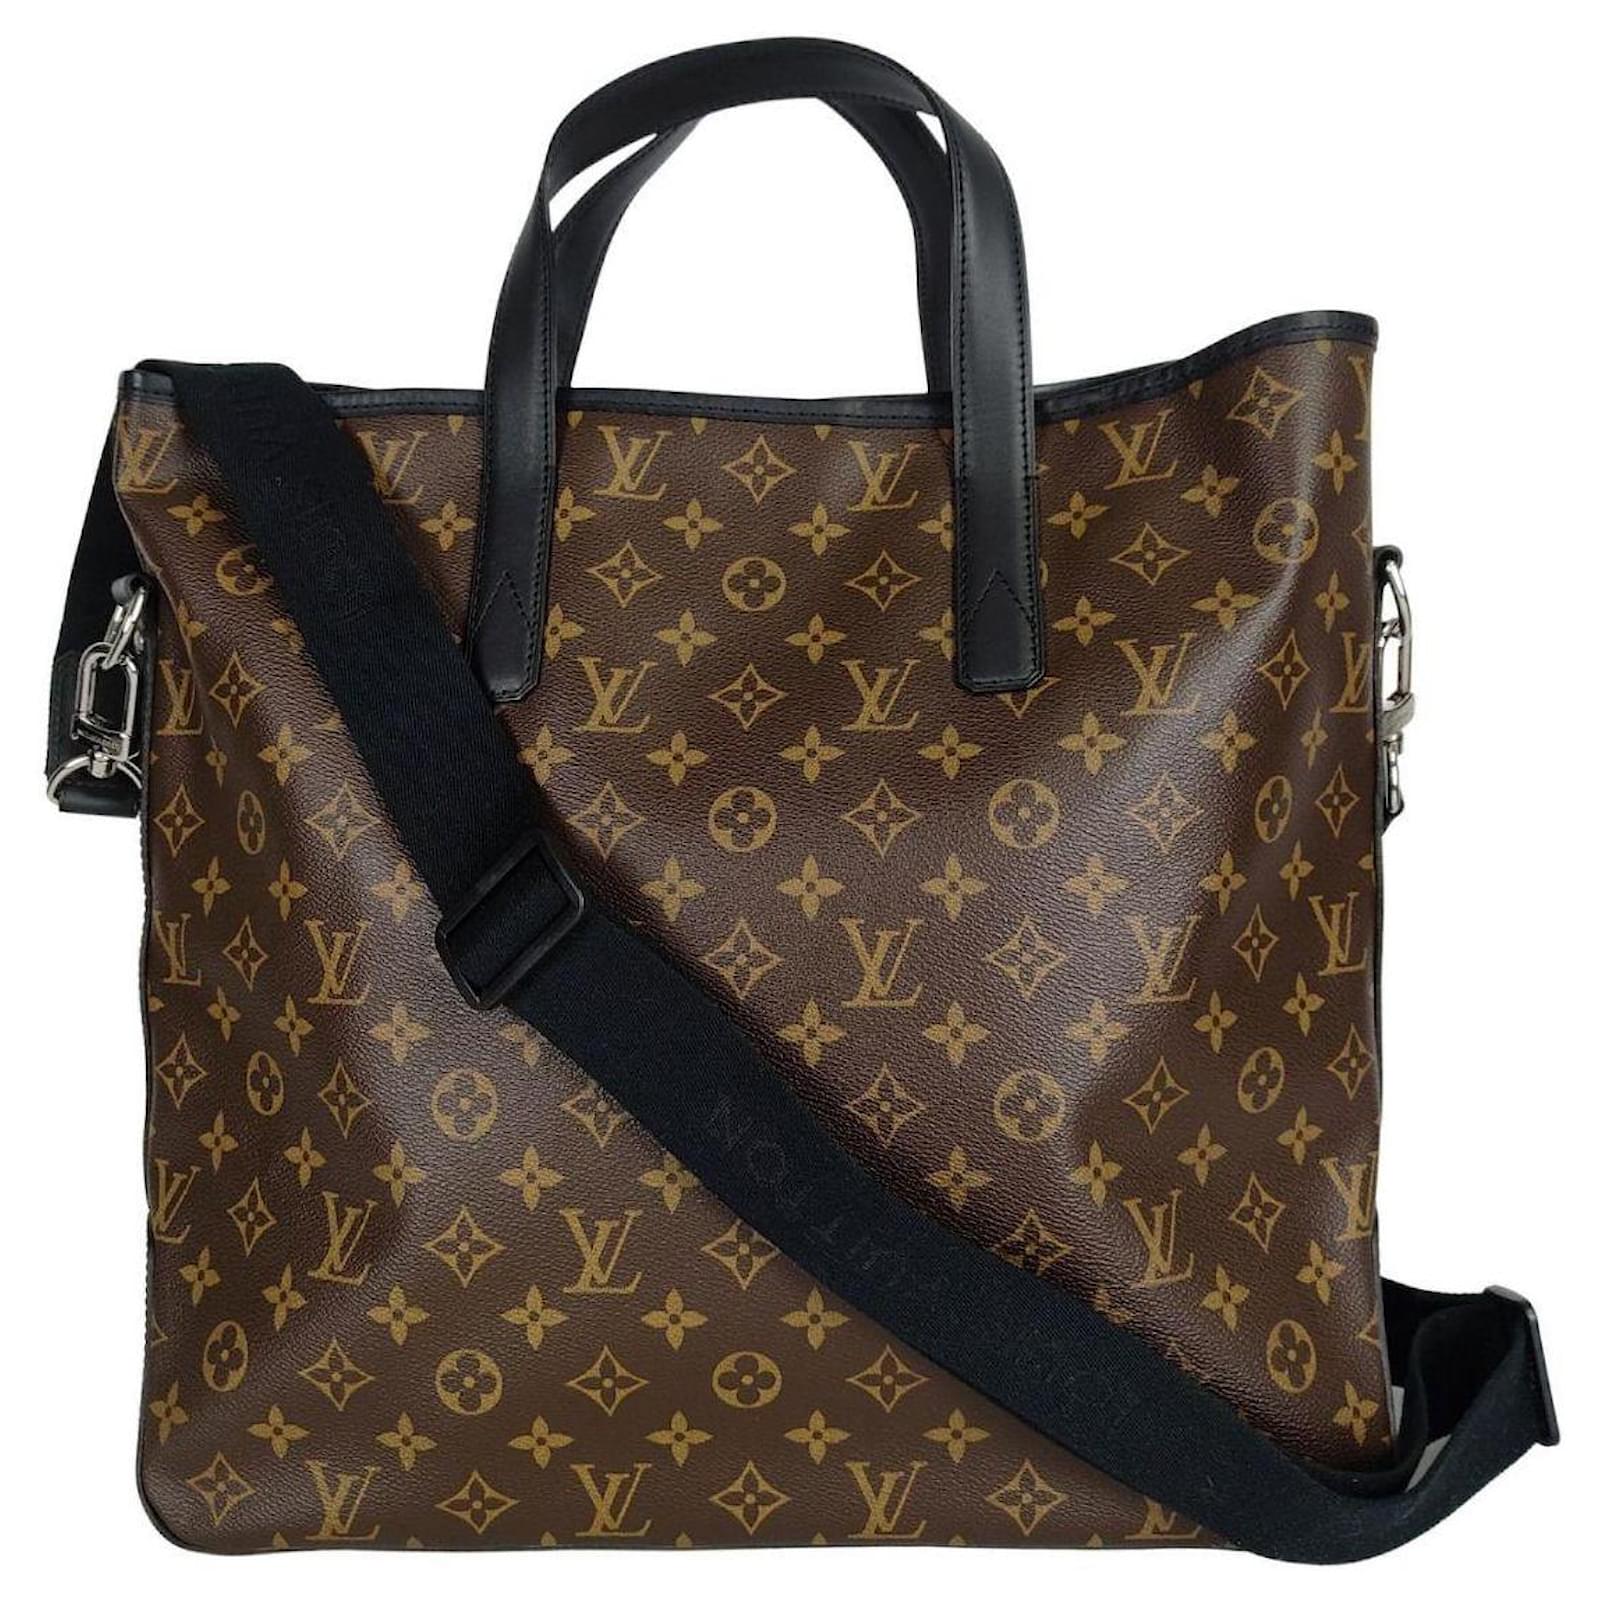 Louis Vuitton Black Canvas Adjustable Bag Shoulder Strap Louis Vuitton